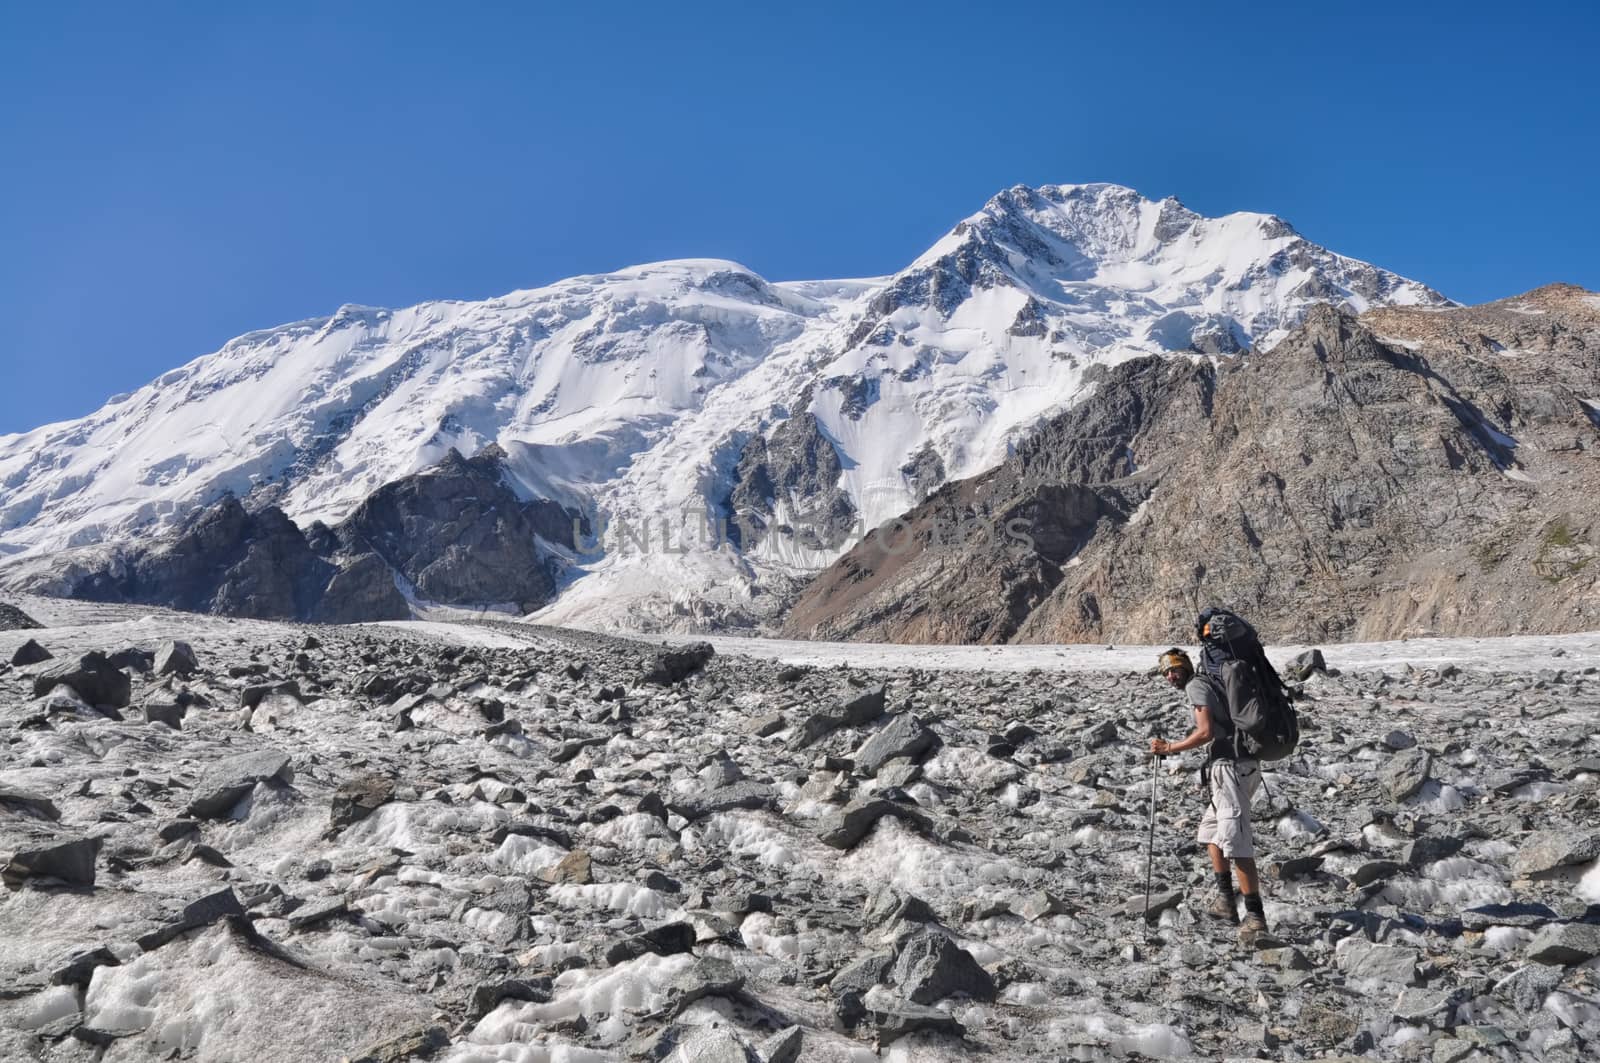 Hiker with backpack on glacier below snow-covered highest peaks in Tien-Shan mountain range in Kyrgyzstan